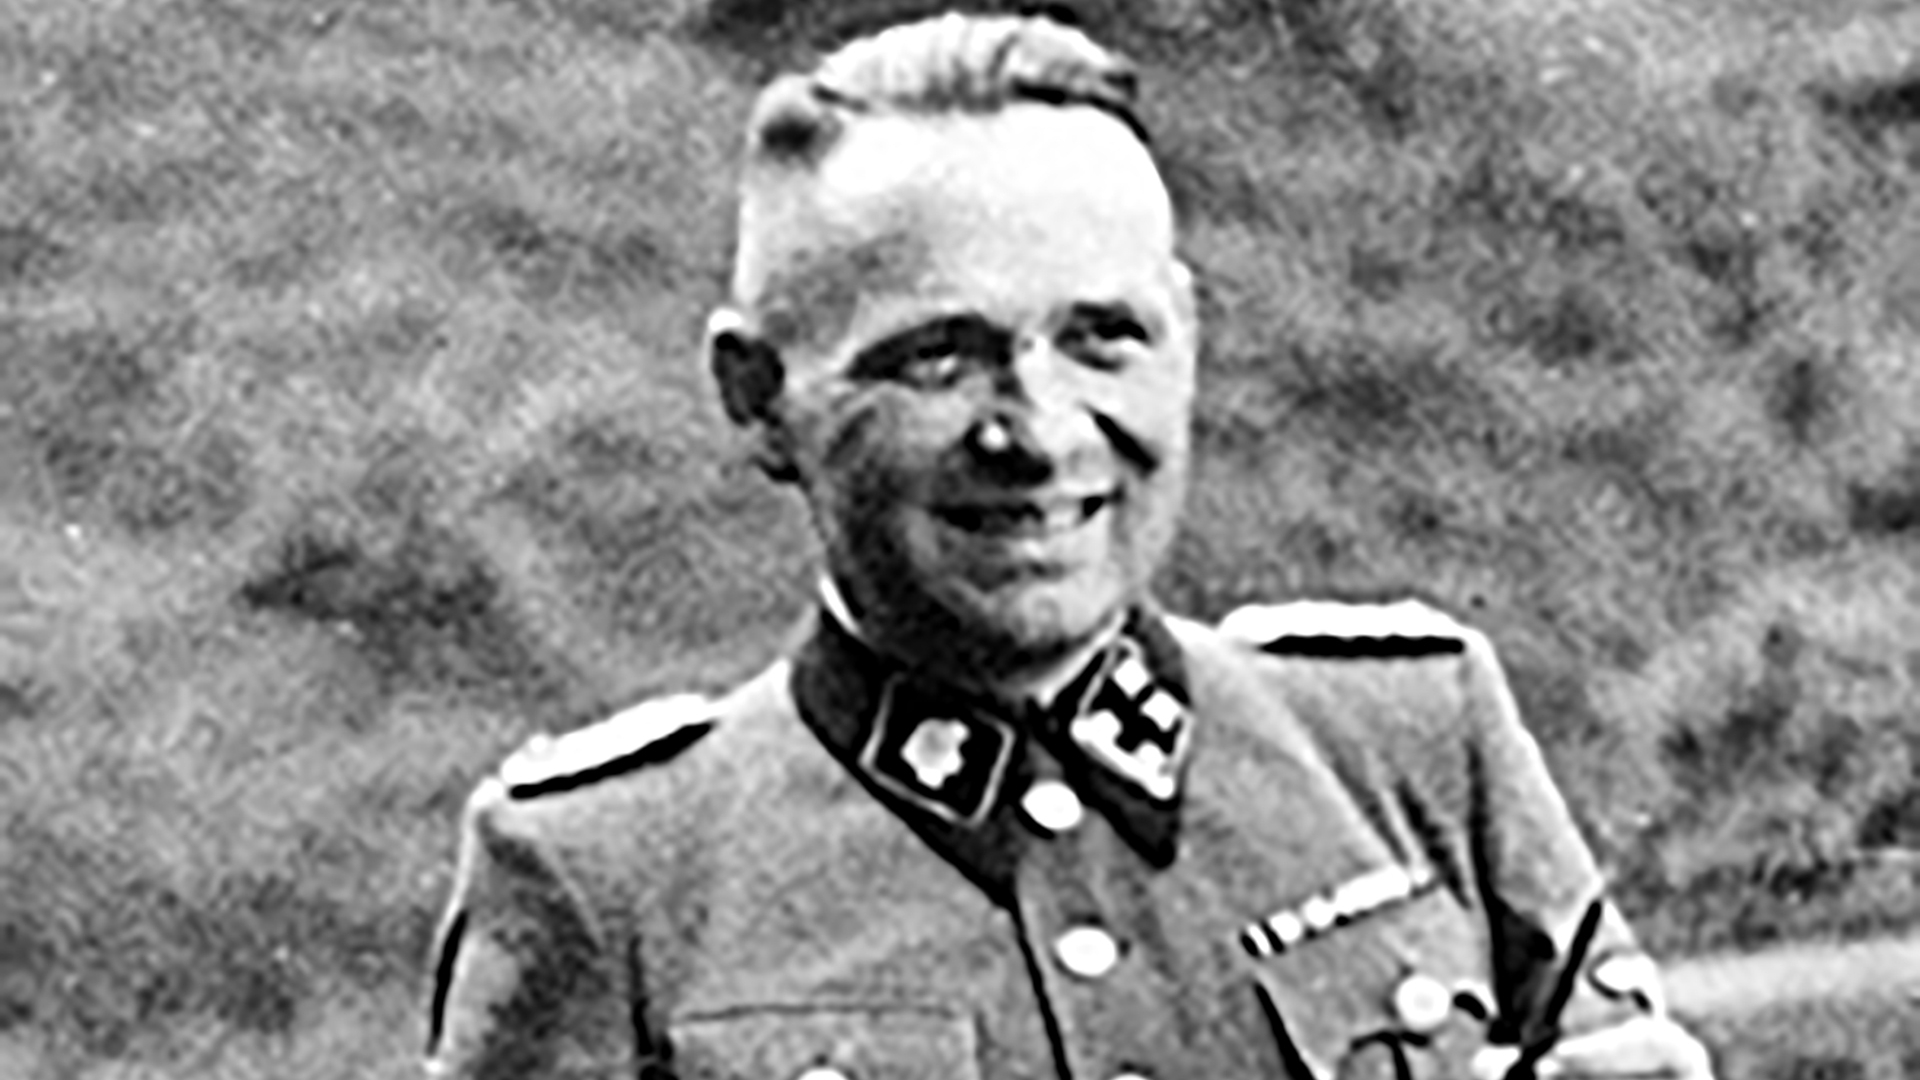 Rudolf Hoss fue el comandante de Auschwitz. el que puso en marcha la fábrica de muerte más terrible de la historia